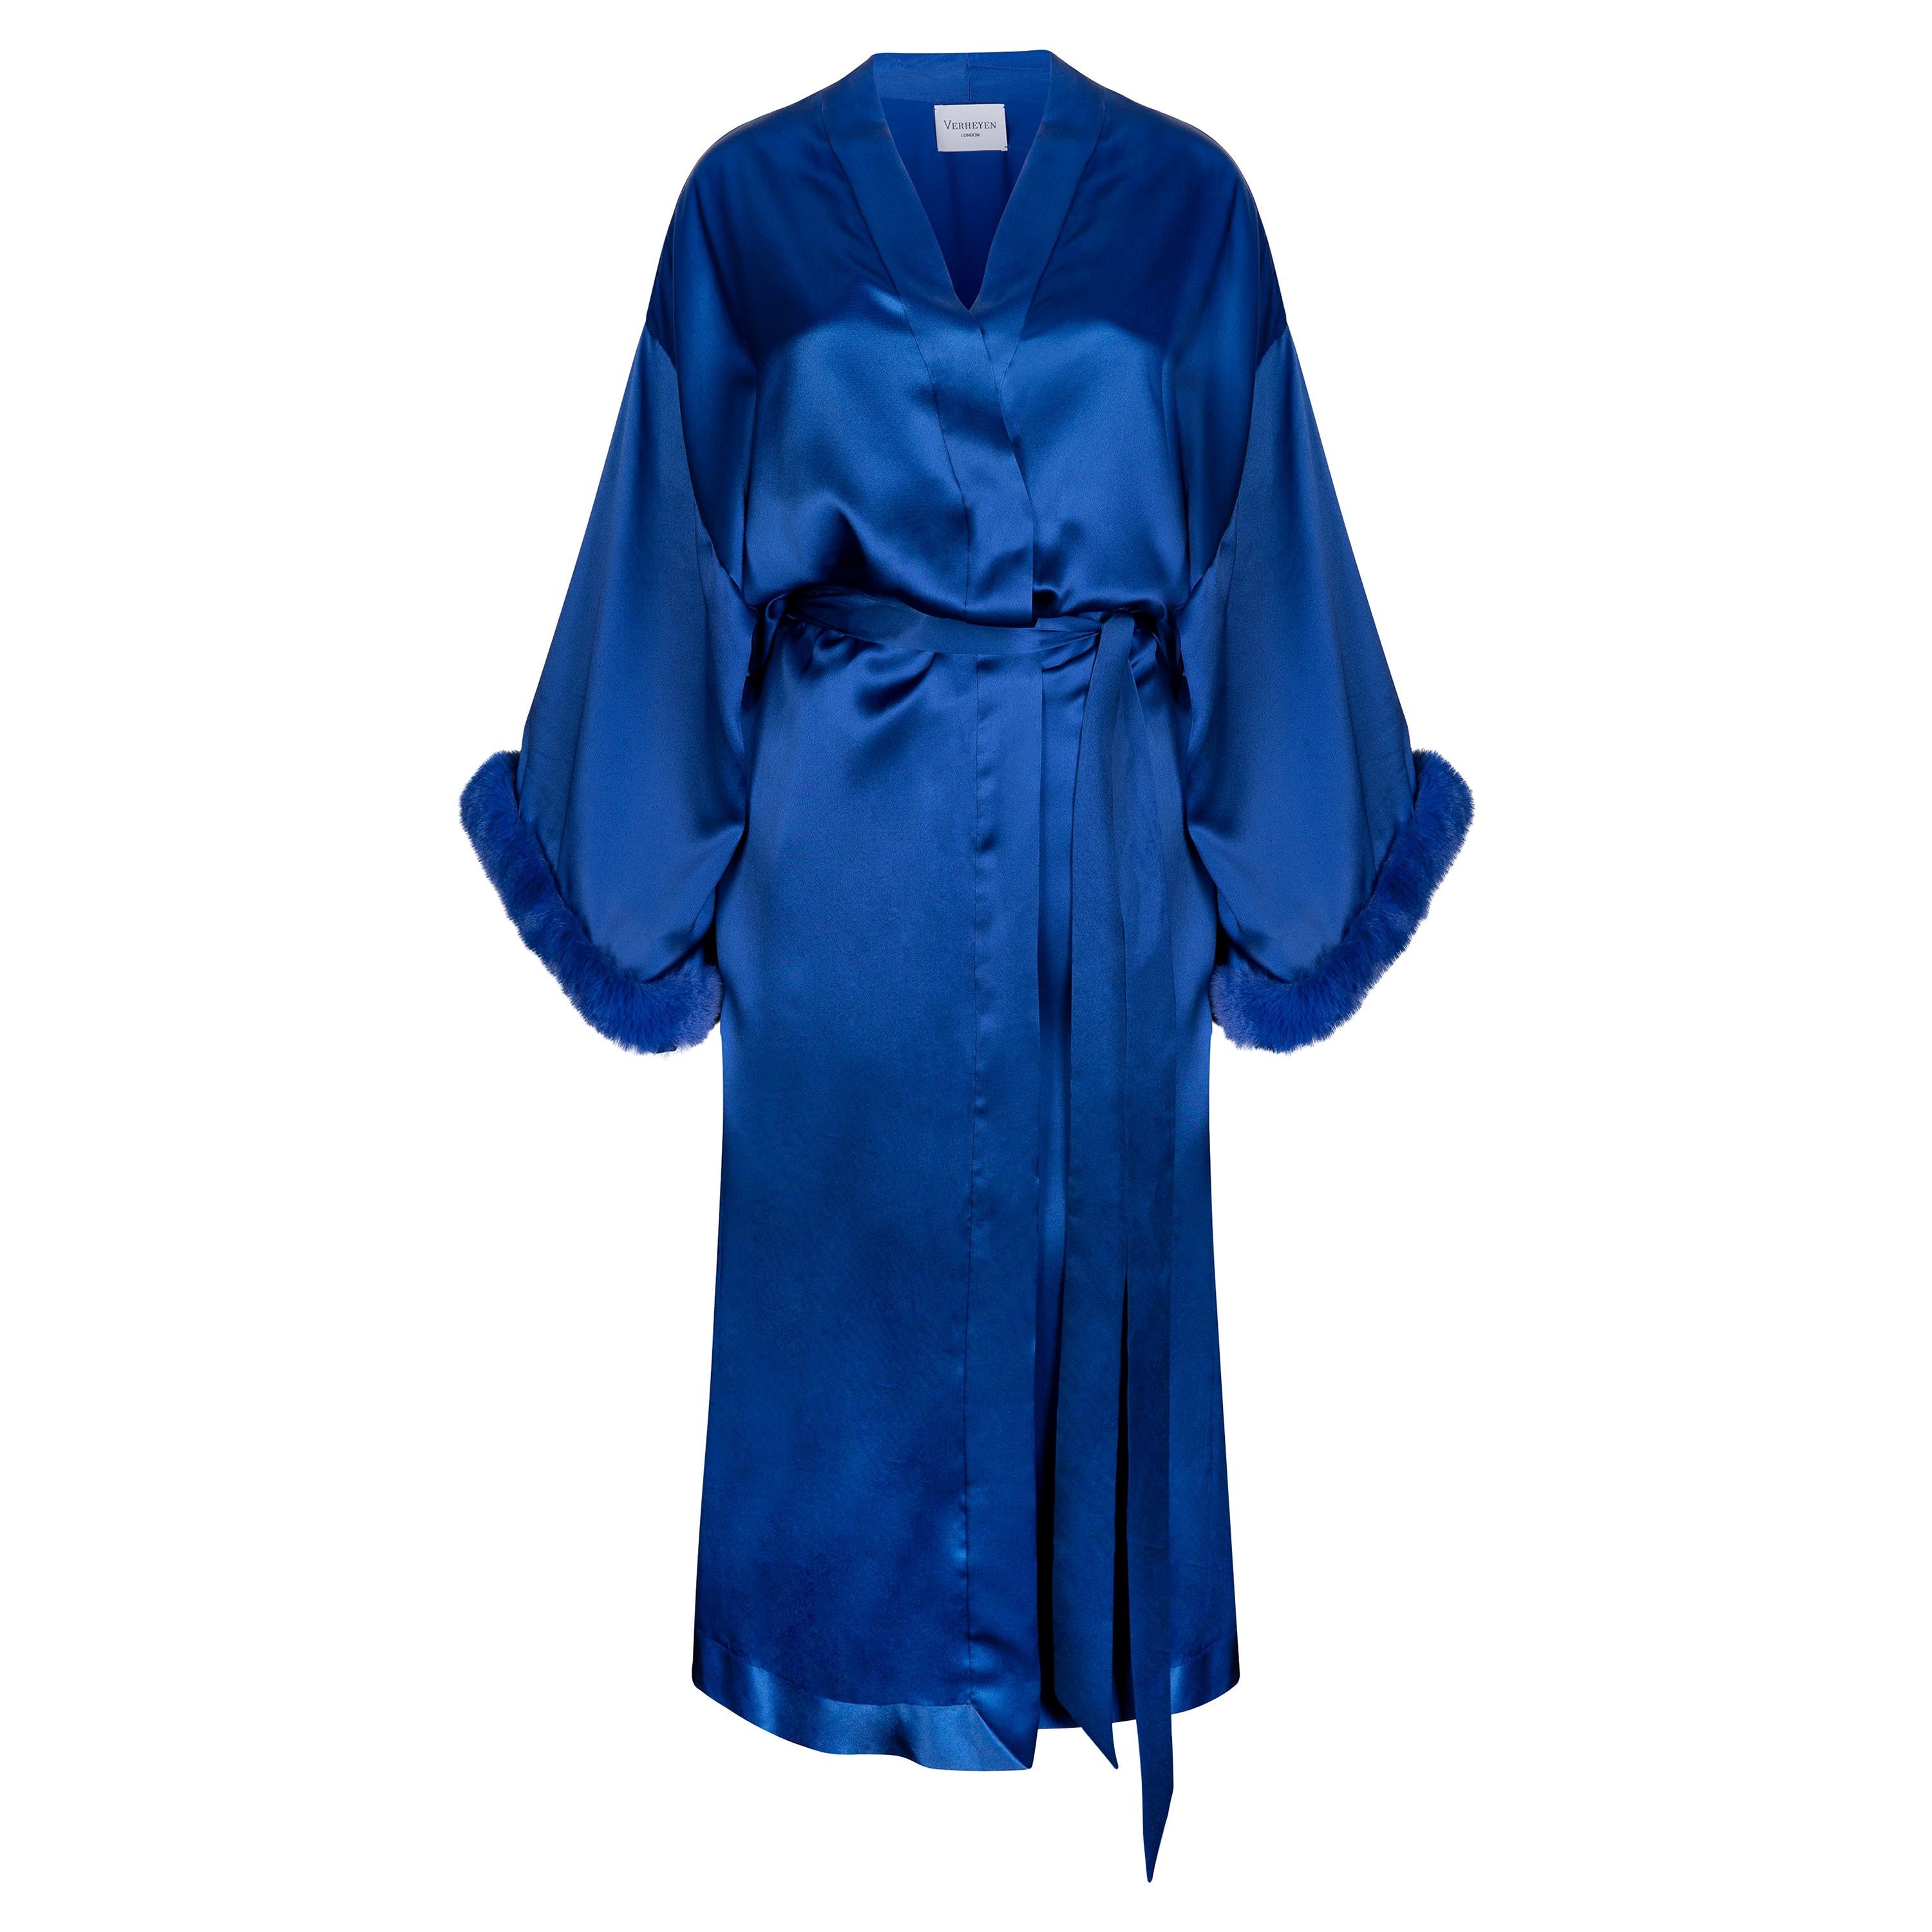 Blaues Kimono-Kleid von London aus italienischer Seide, Satin und Kunstpelz - Einheitsgröße 